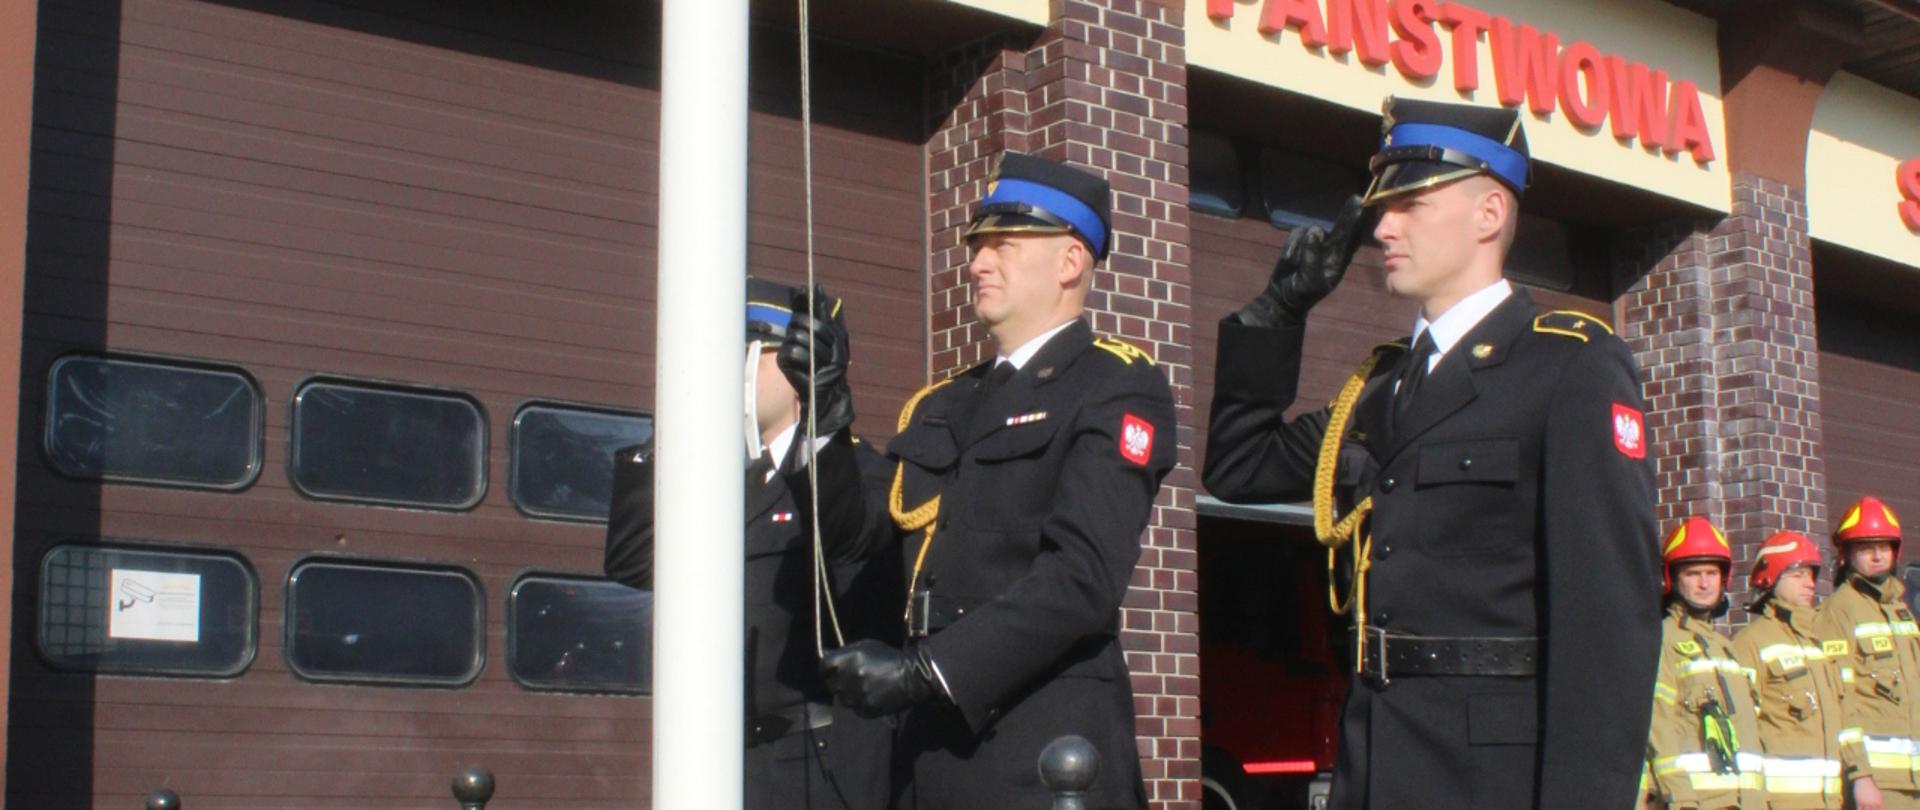 Trzyosobowy poczet flagowy strażaków w ubraniach galowych zawiesza flagę Polski na maszt przed budynkiem komendy.